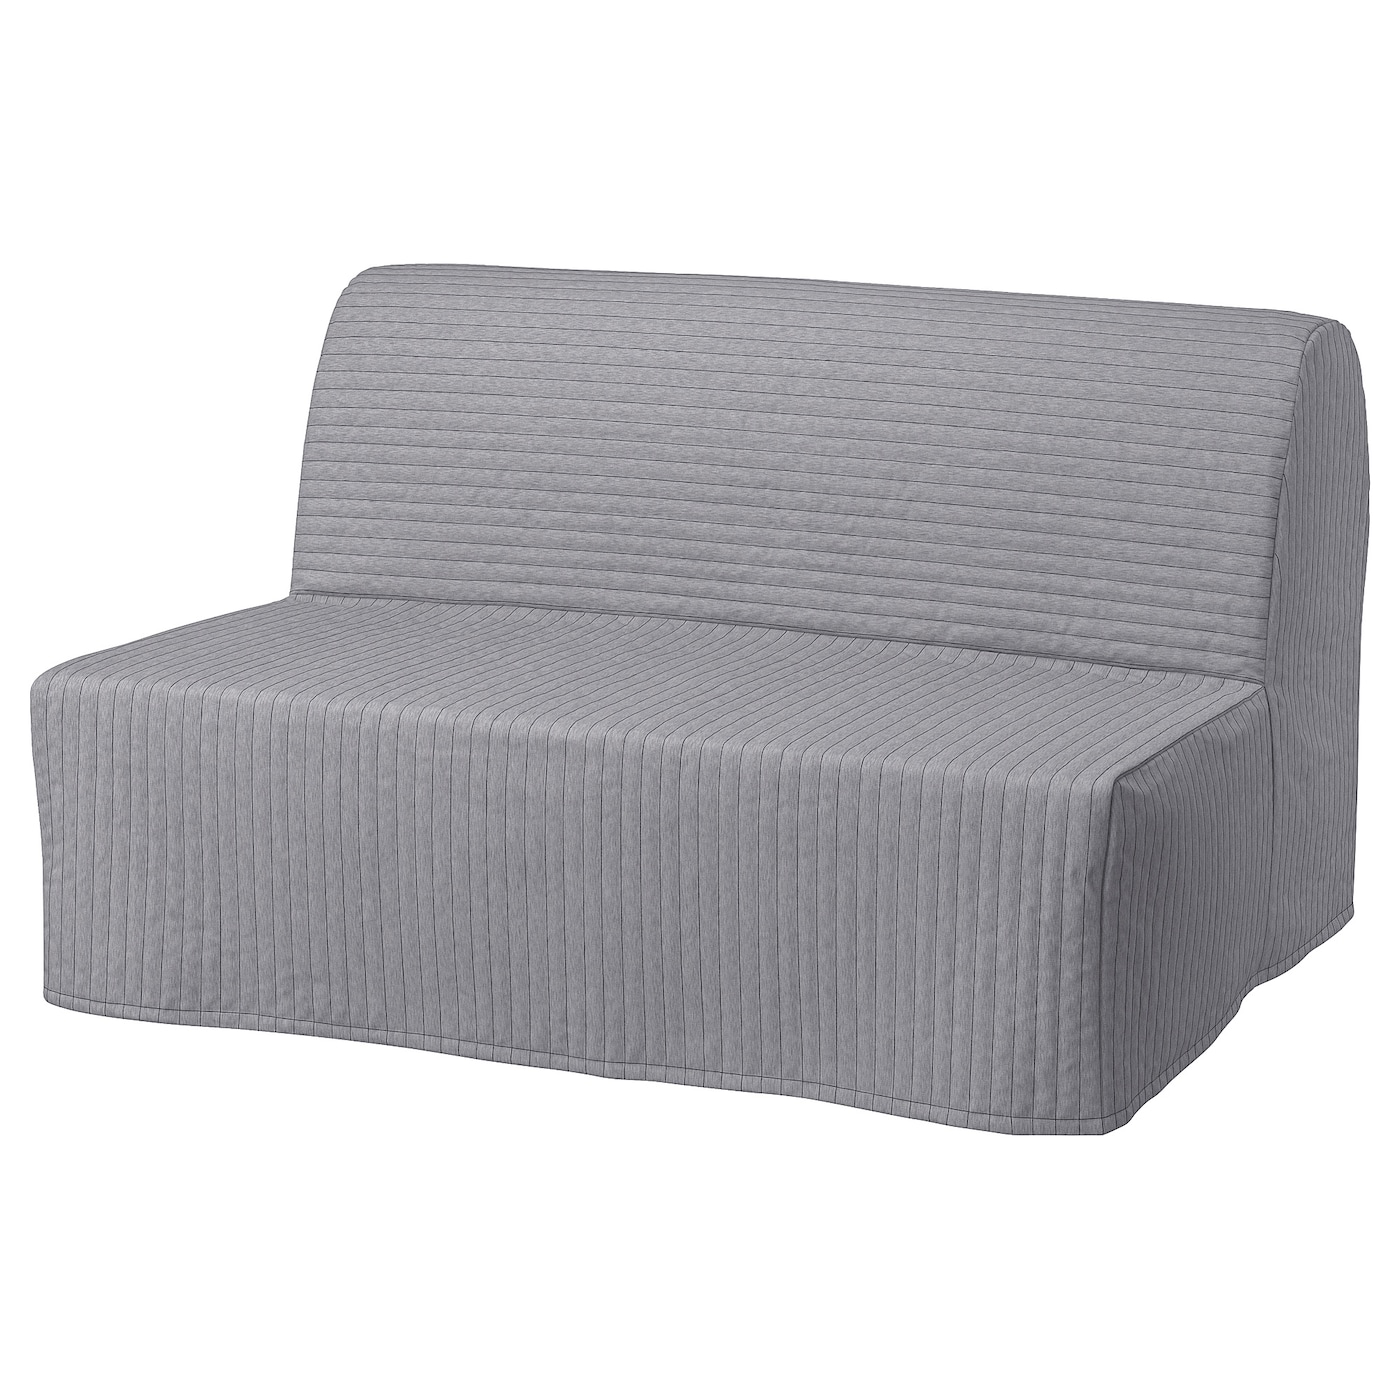 ЛИКСЕЛЕ ЛЁВОС 2 дивана-кровати с откидной спинкой, Книса светло-серый LYCKSELE LÖVÅS IKEA матрас для дивана первый мебельный винсен 3